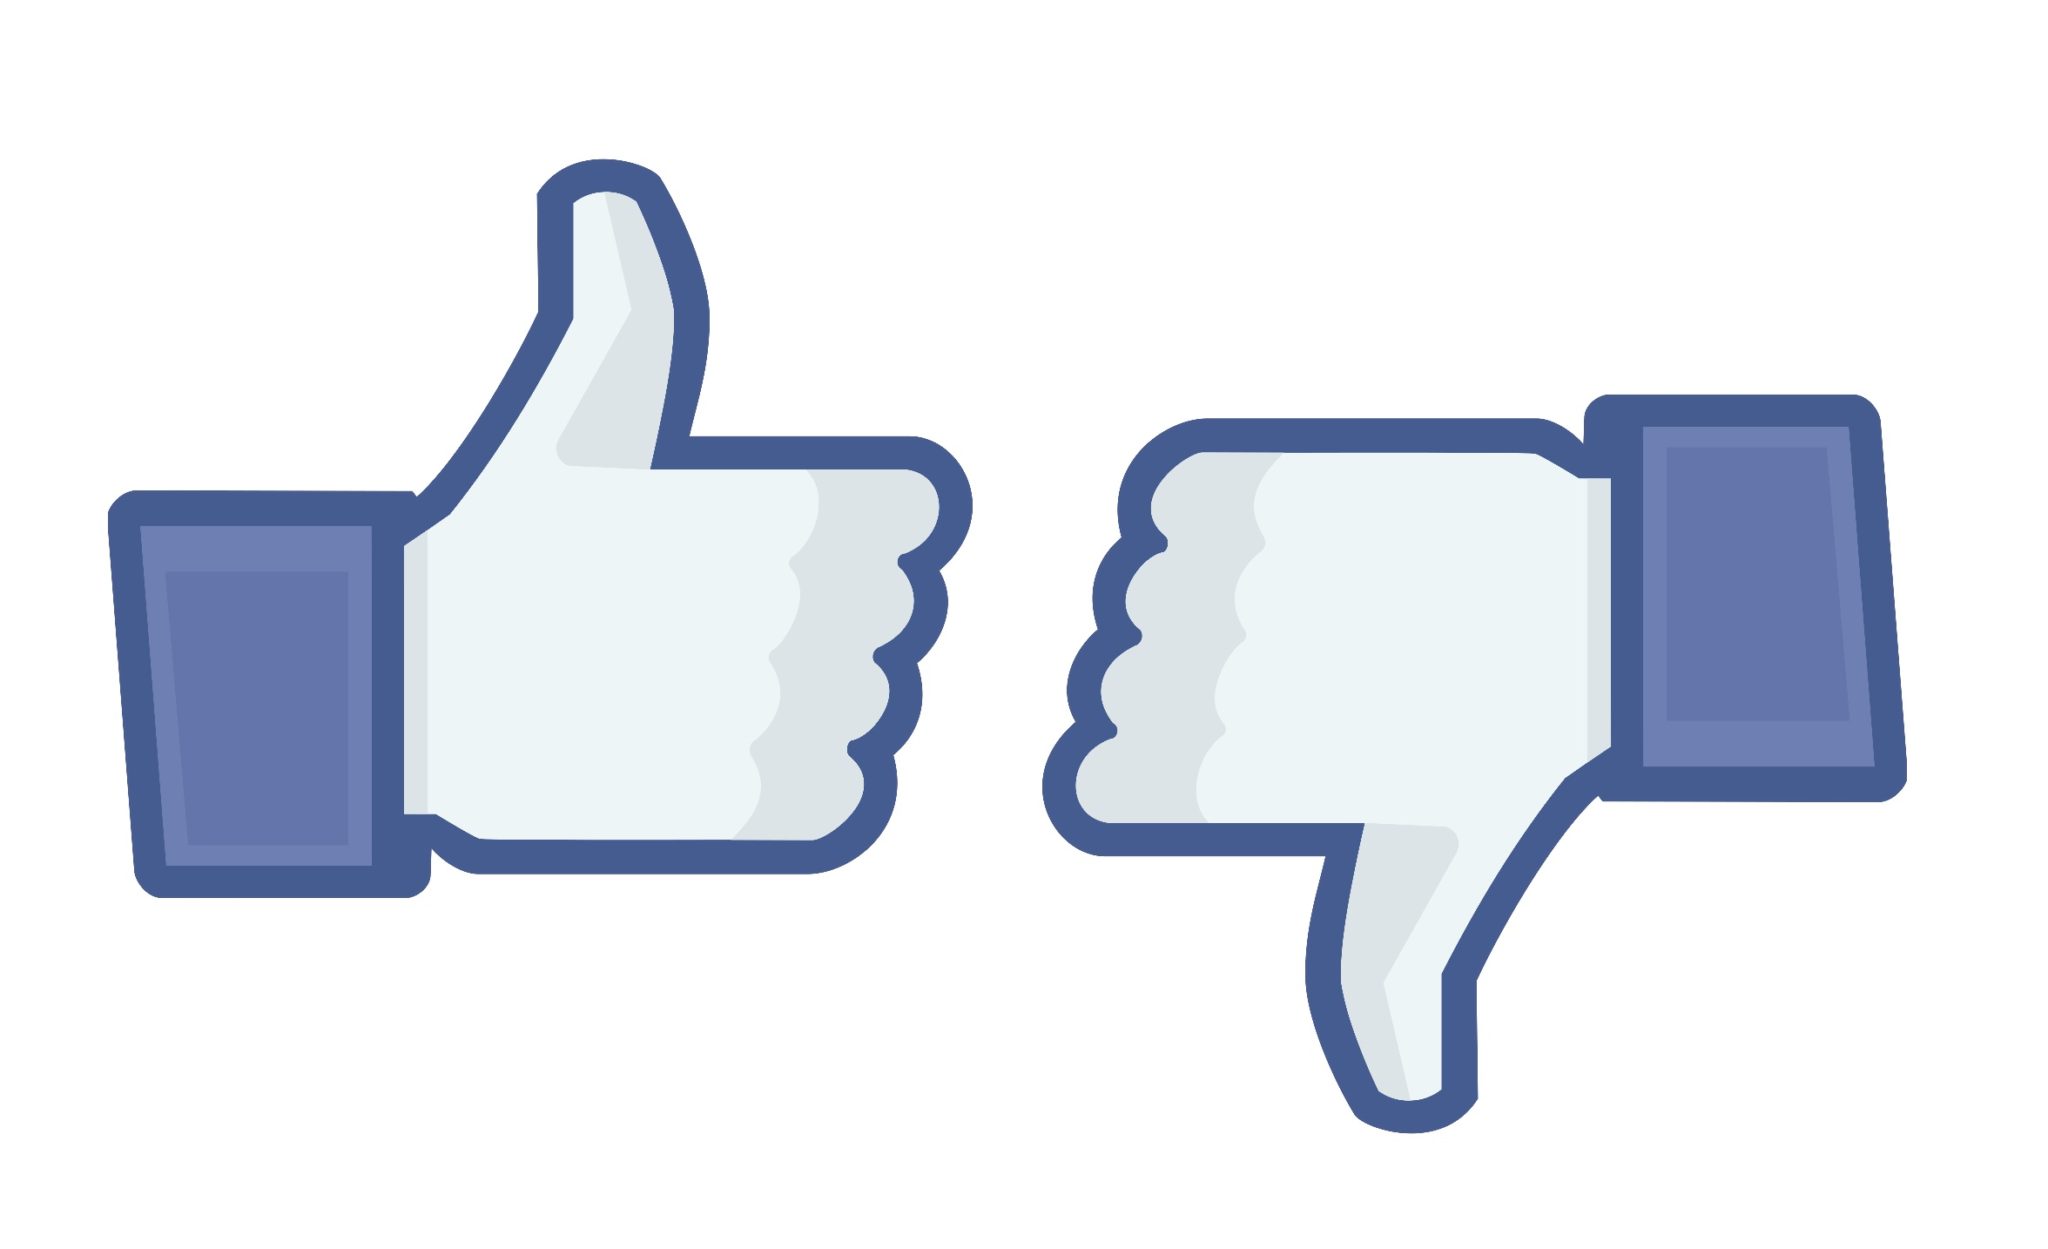 مشكلة في فيسبوك الاعجاب بصفحات بدون إذنك كيف يحدث وماذا تفعل؟